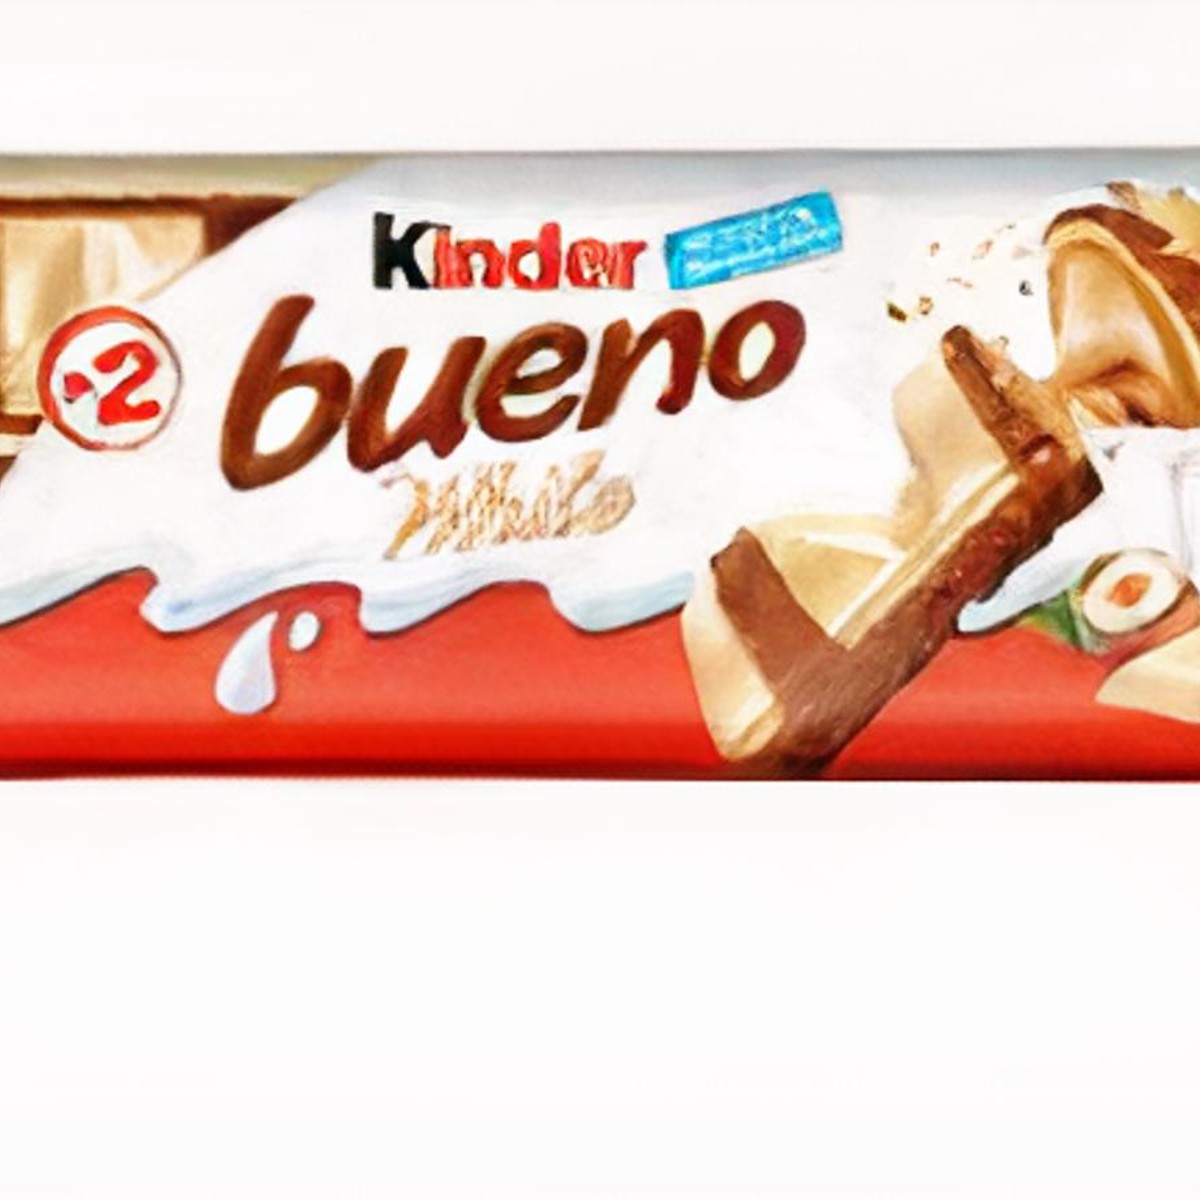 Kinder Bueno Coconut - Sachet de 2 barres de chocolat noix de coco